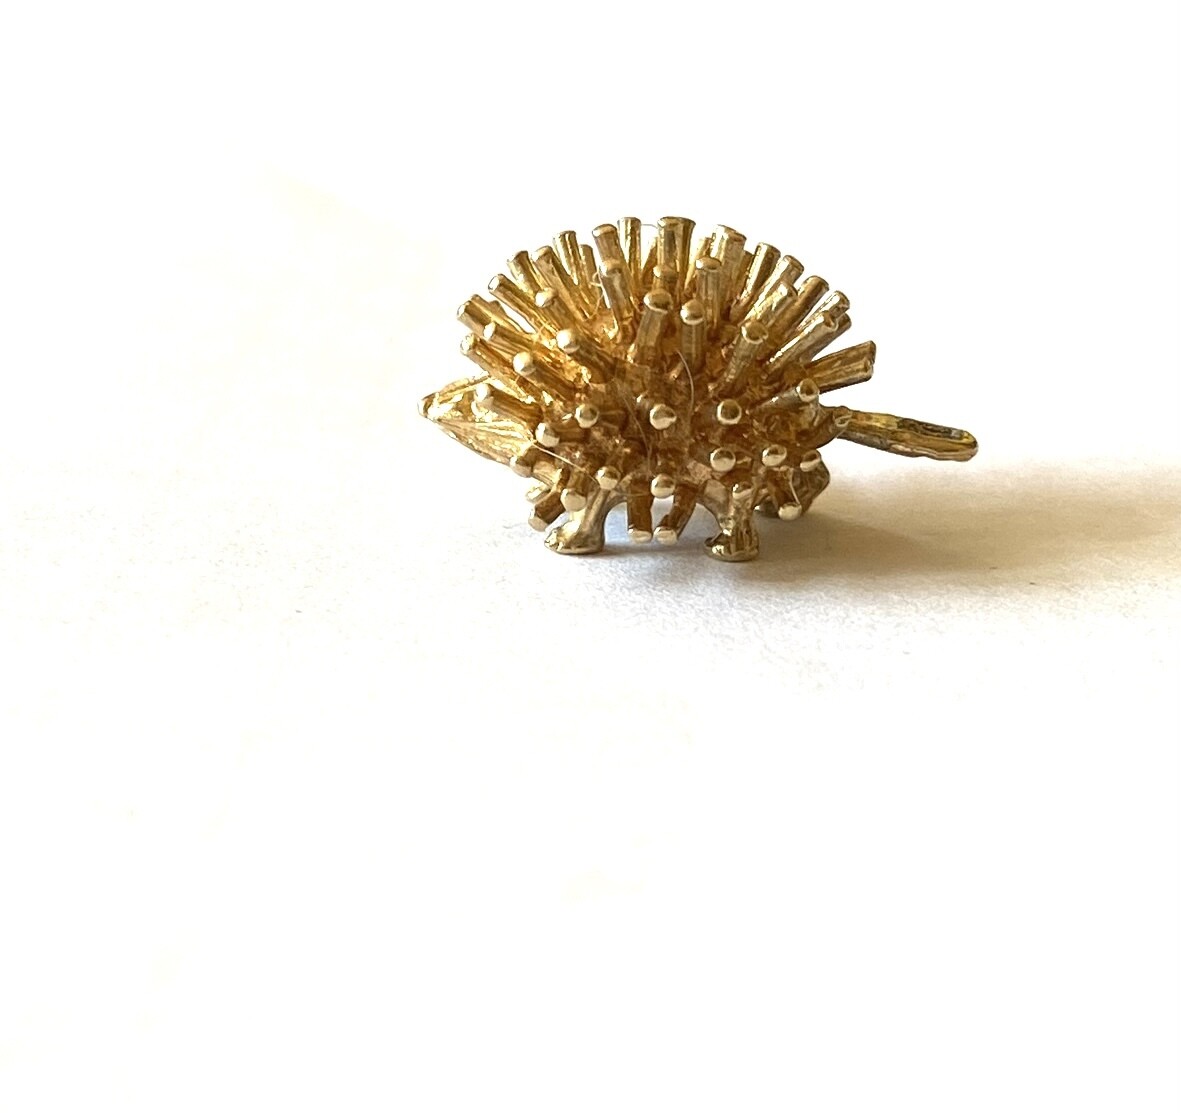 9ct vintage hedgehog charm small circa 1979 2.5g